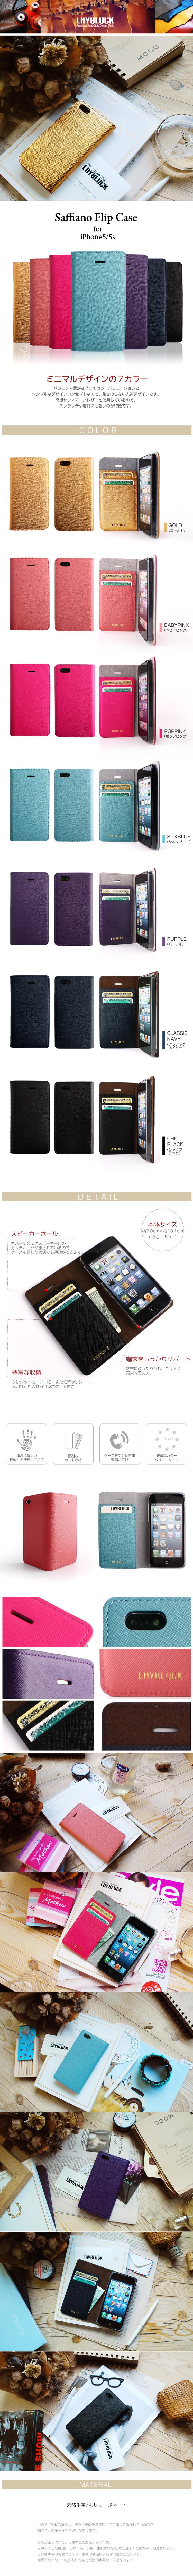 商品詳細iPhone5/5sサフィアーノフリップケース